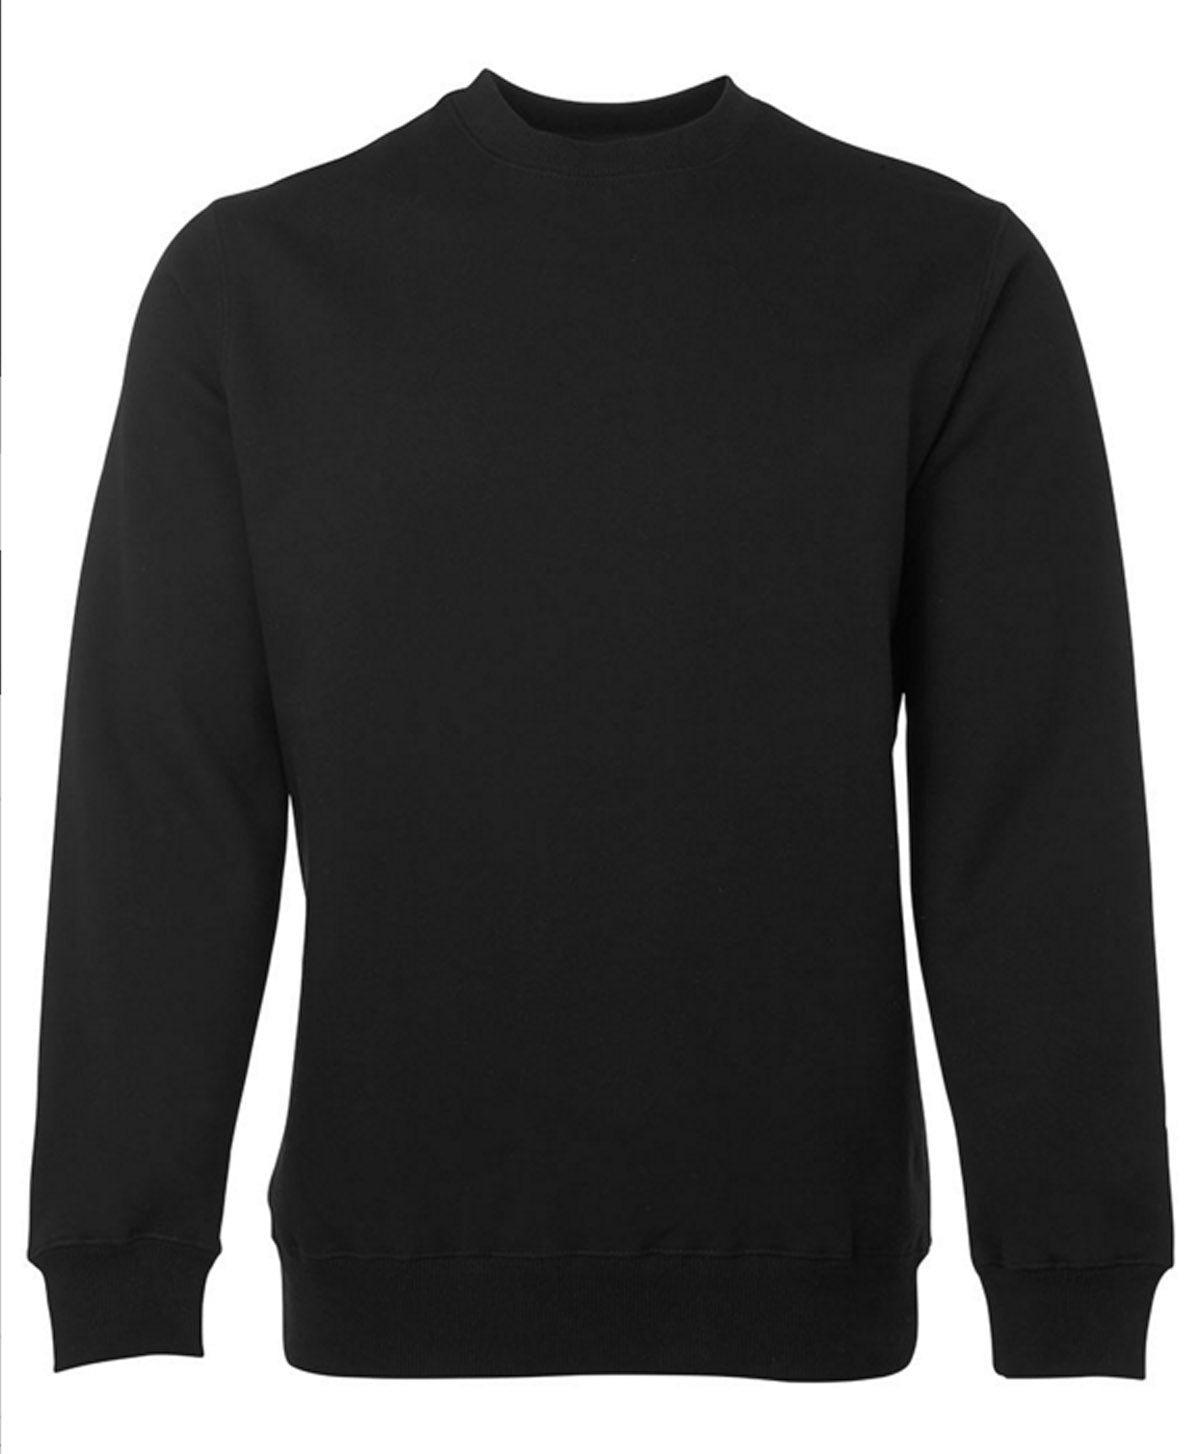 JBs Poly/Cotton Fleece CREW Sweater - BLACK NAVY GREEN GREY S Black Mens Winter Top by JBs Wear | The Bloke Shop